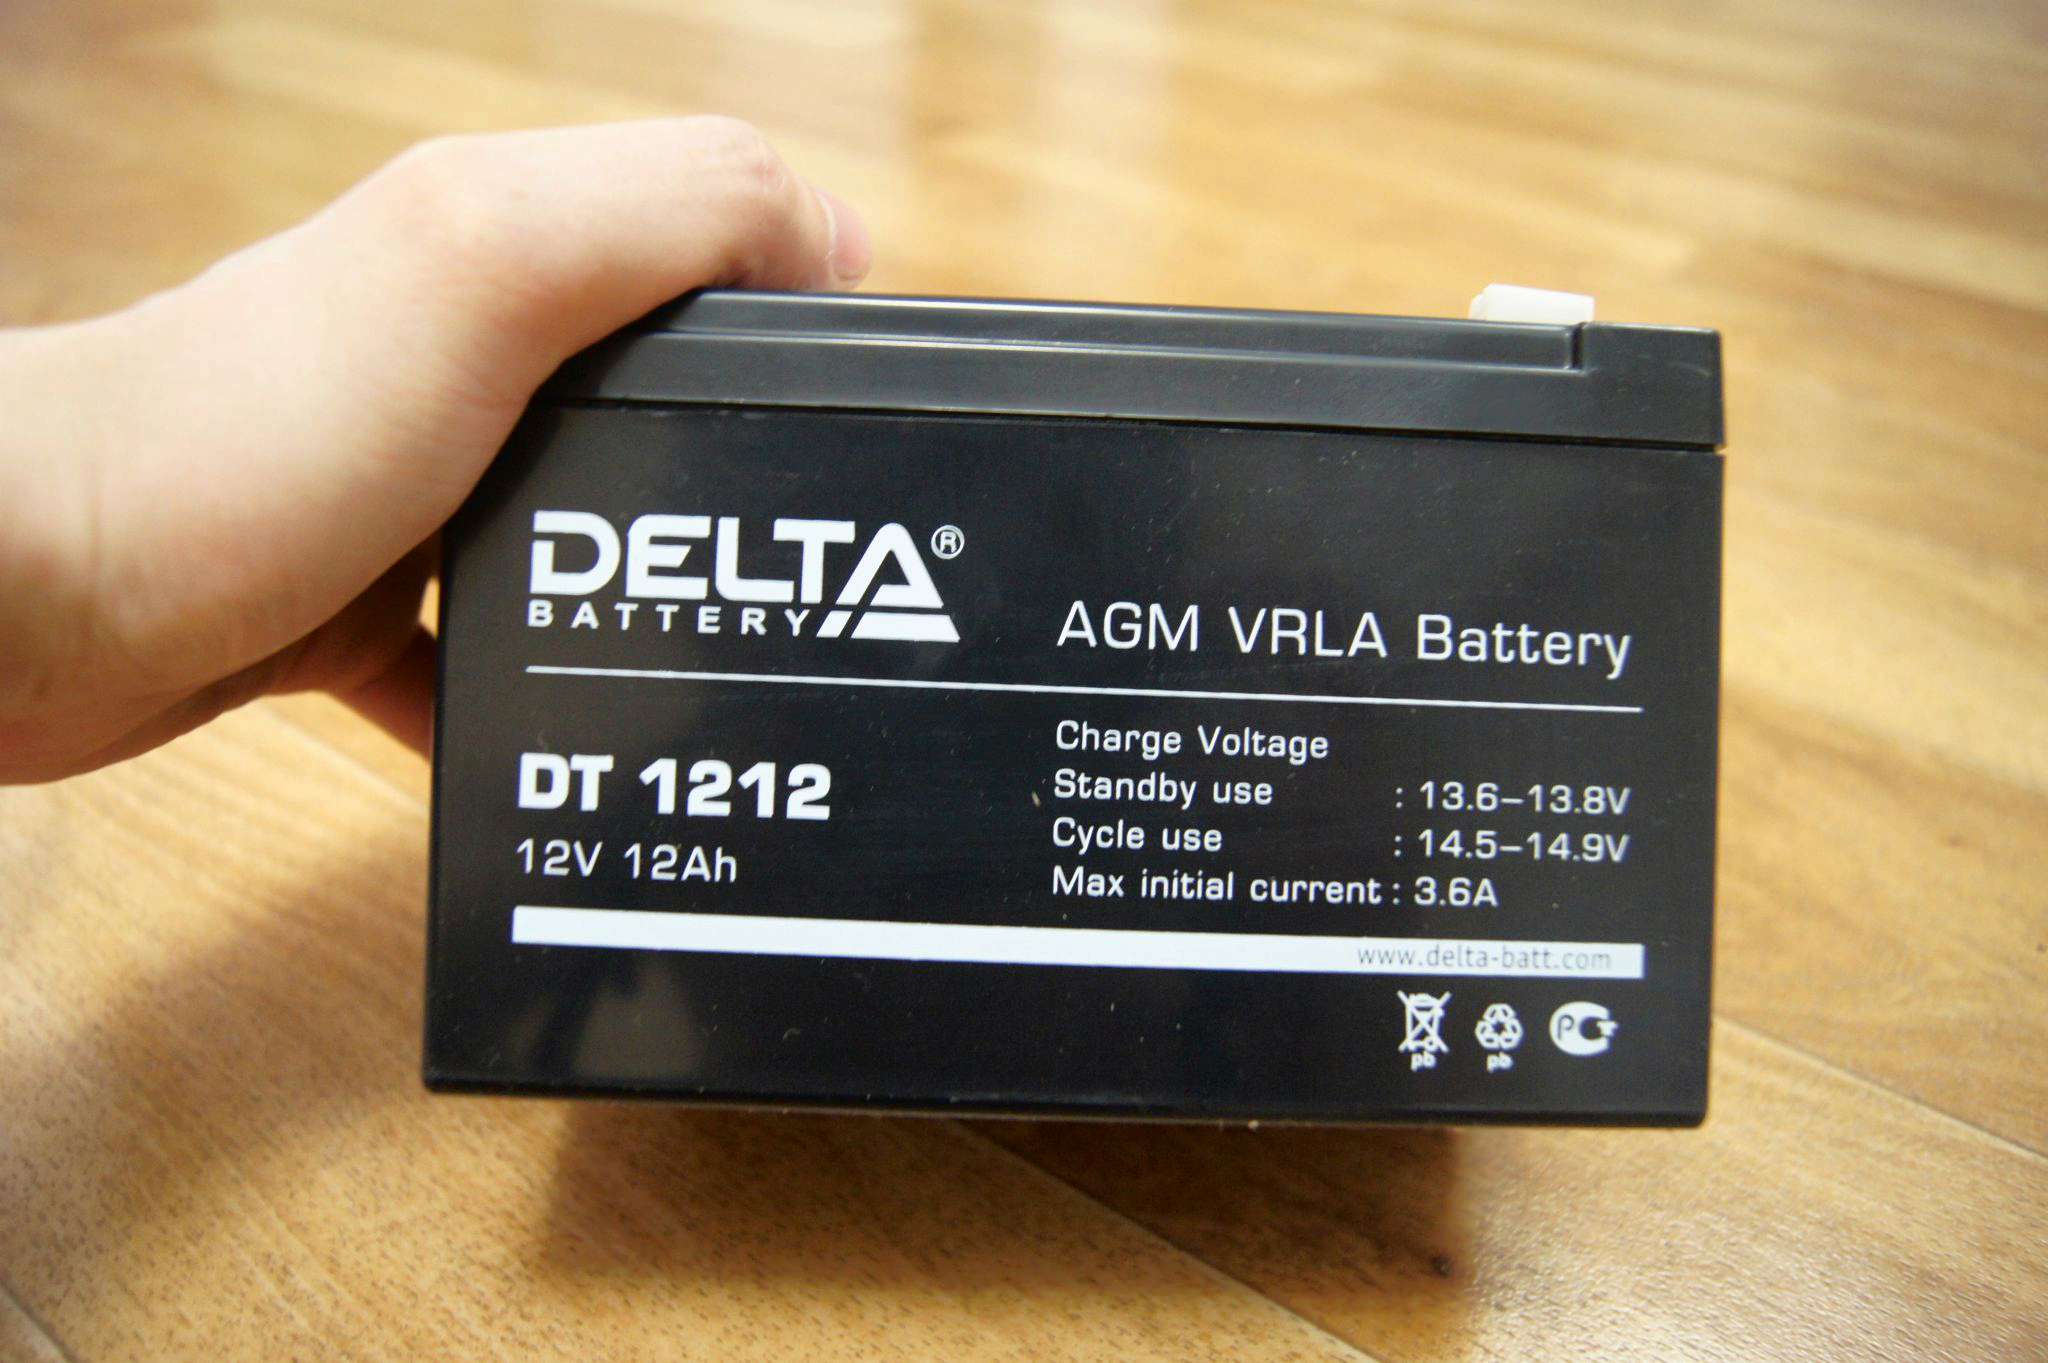 Agm vrla battery 12v. Аккумулятор Delta DT 1212. DT 1212 Delta аккумуляторная батарея. Аккумуляторная батарея Delta DT 1212 12 ампер. Delta Battery AGM VRLA 12 V.